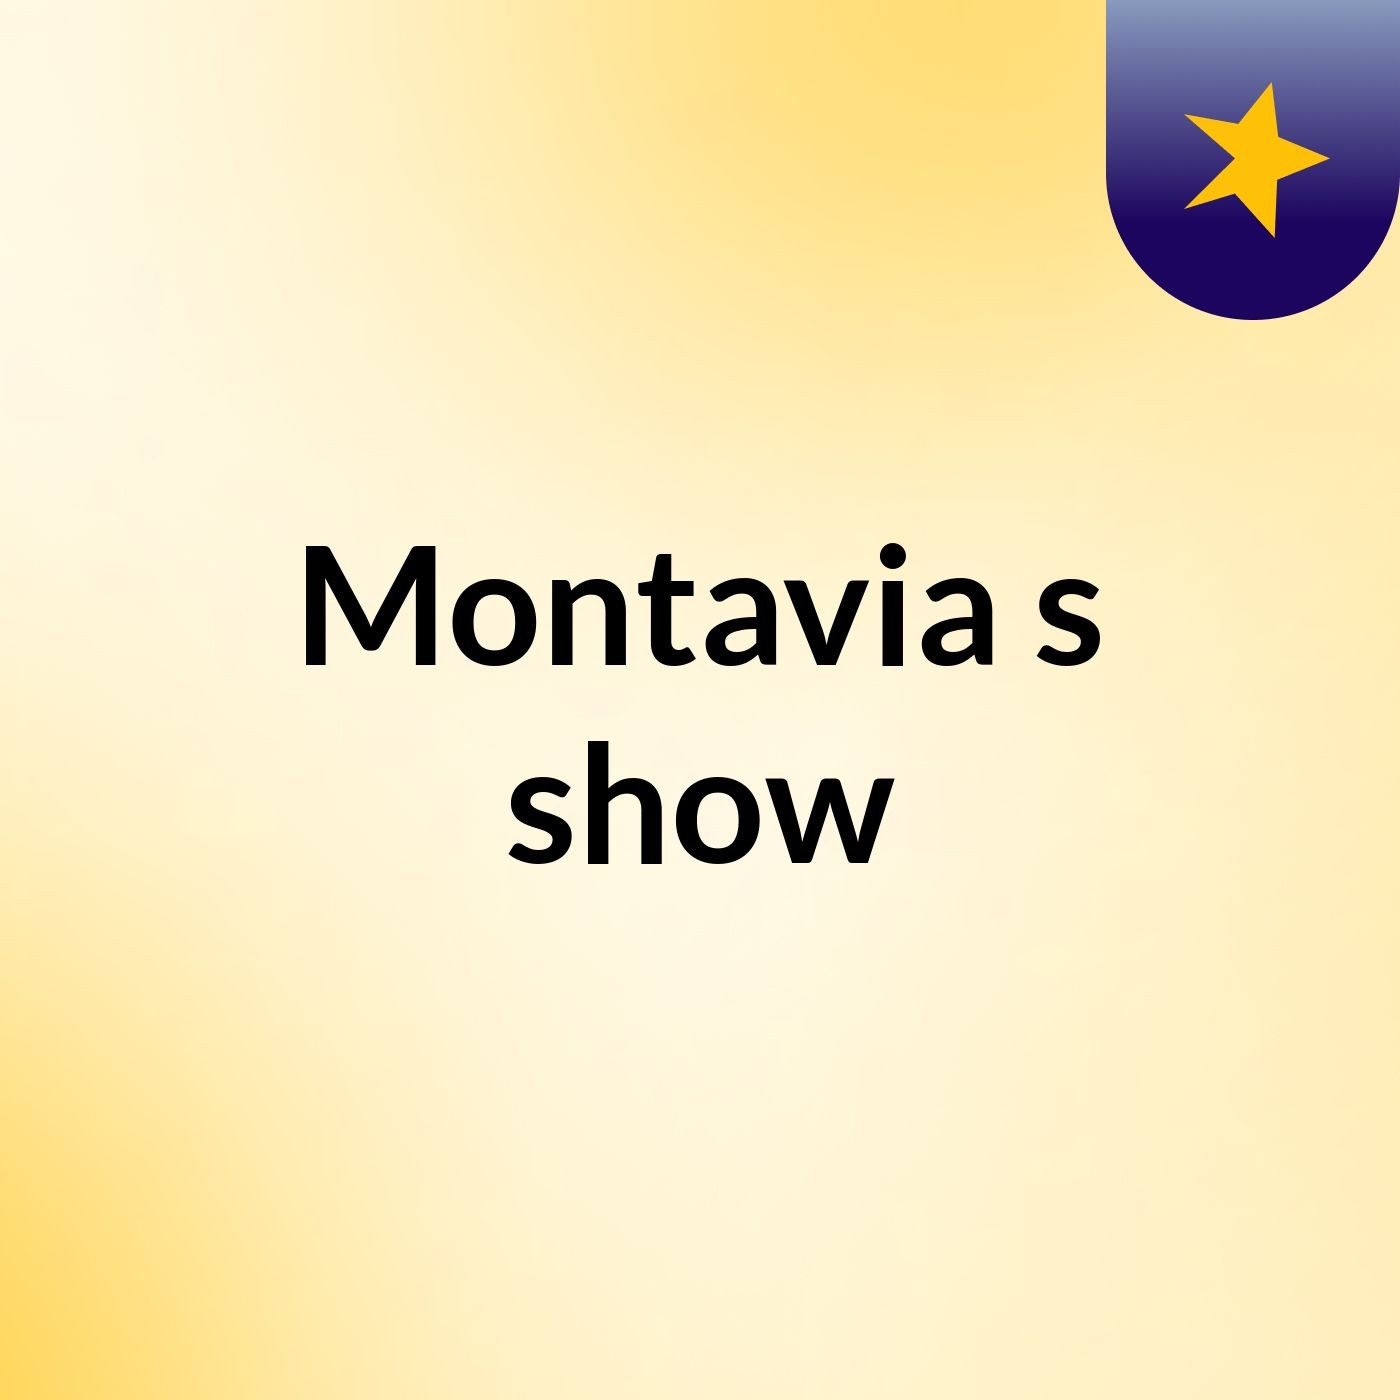 Montavia's show